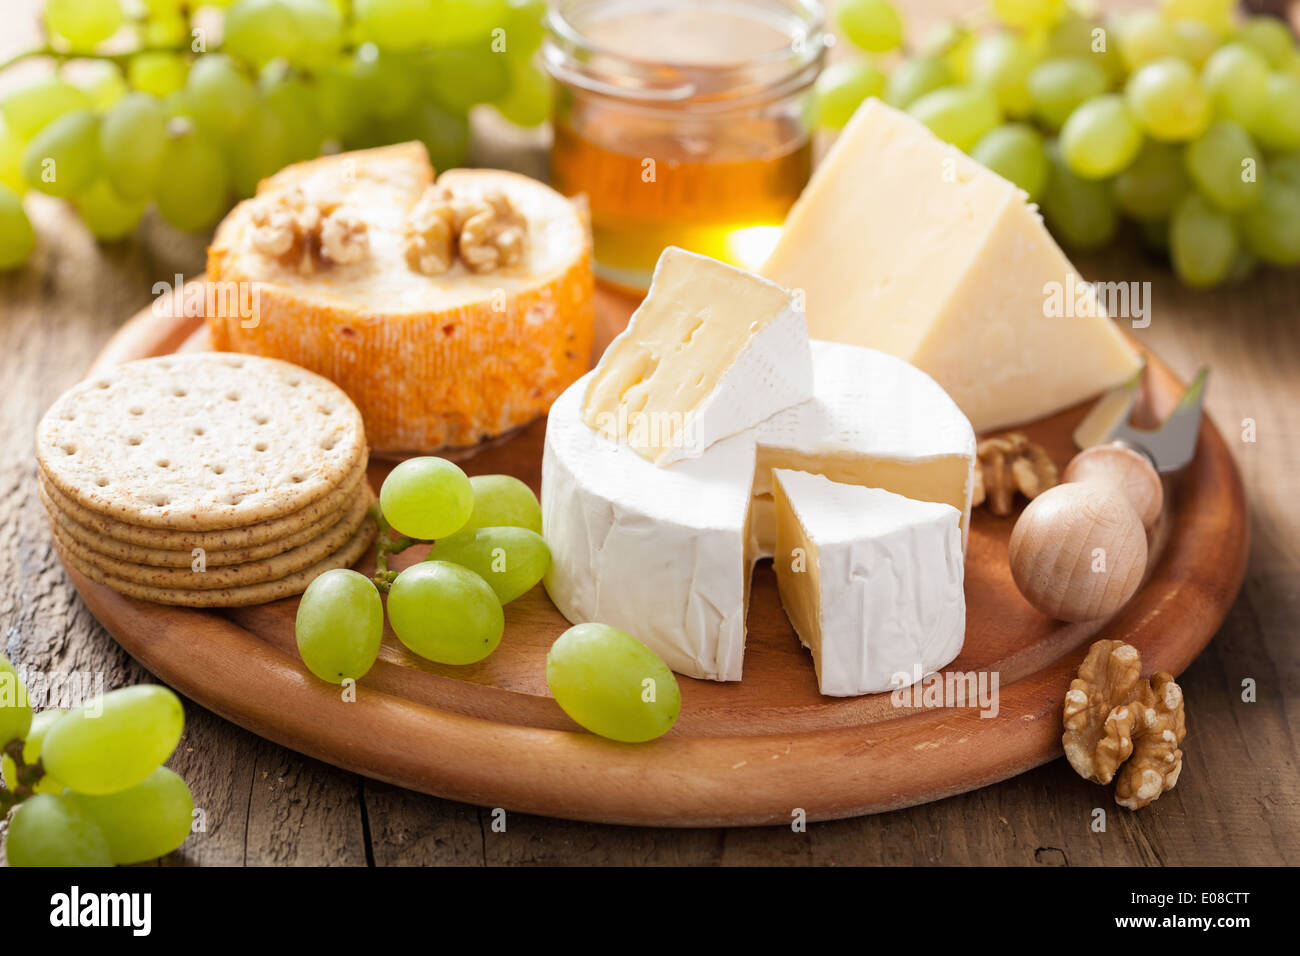 Käseplatte mit Camembert, Cheddar, Trauben und Honig Stockfotografie ...